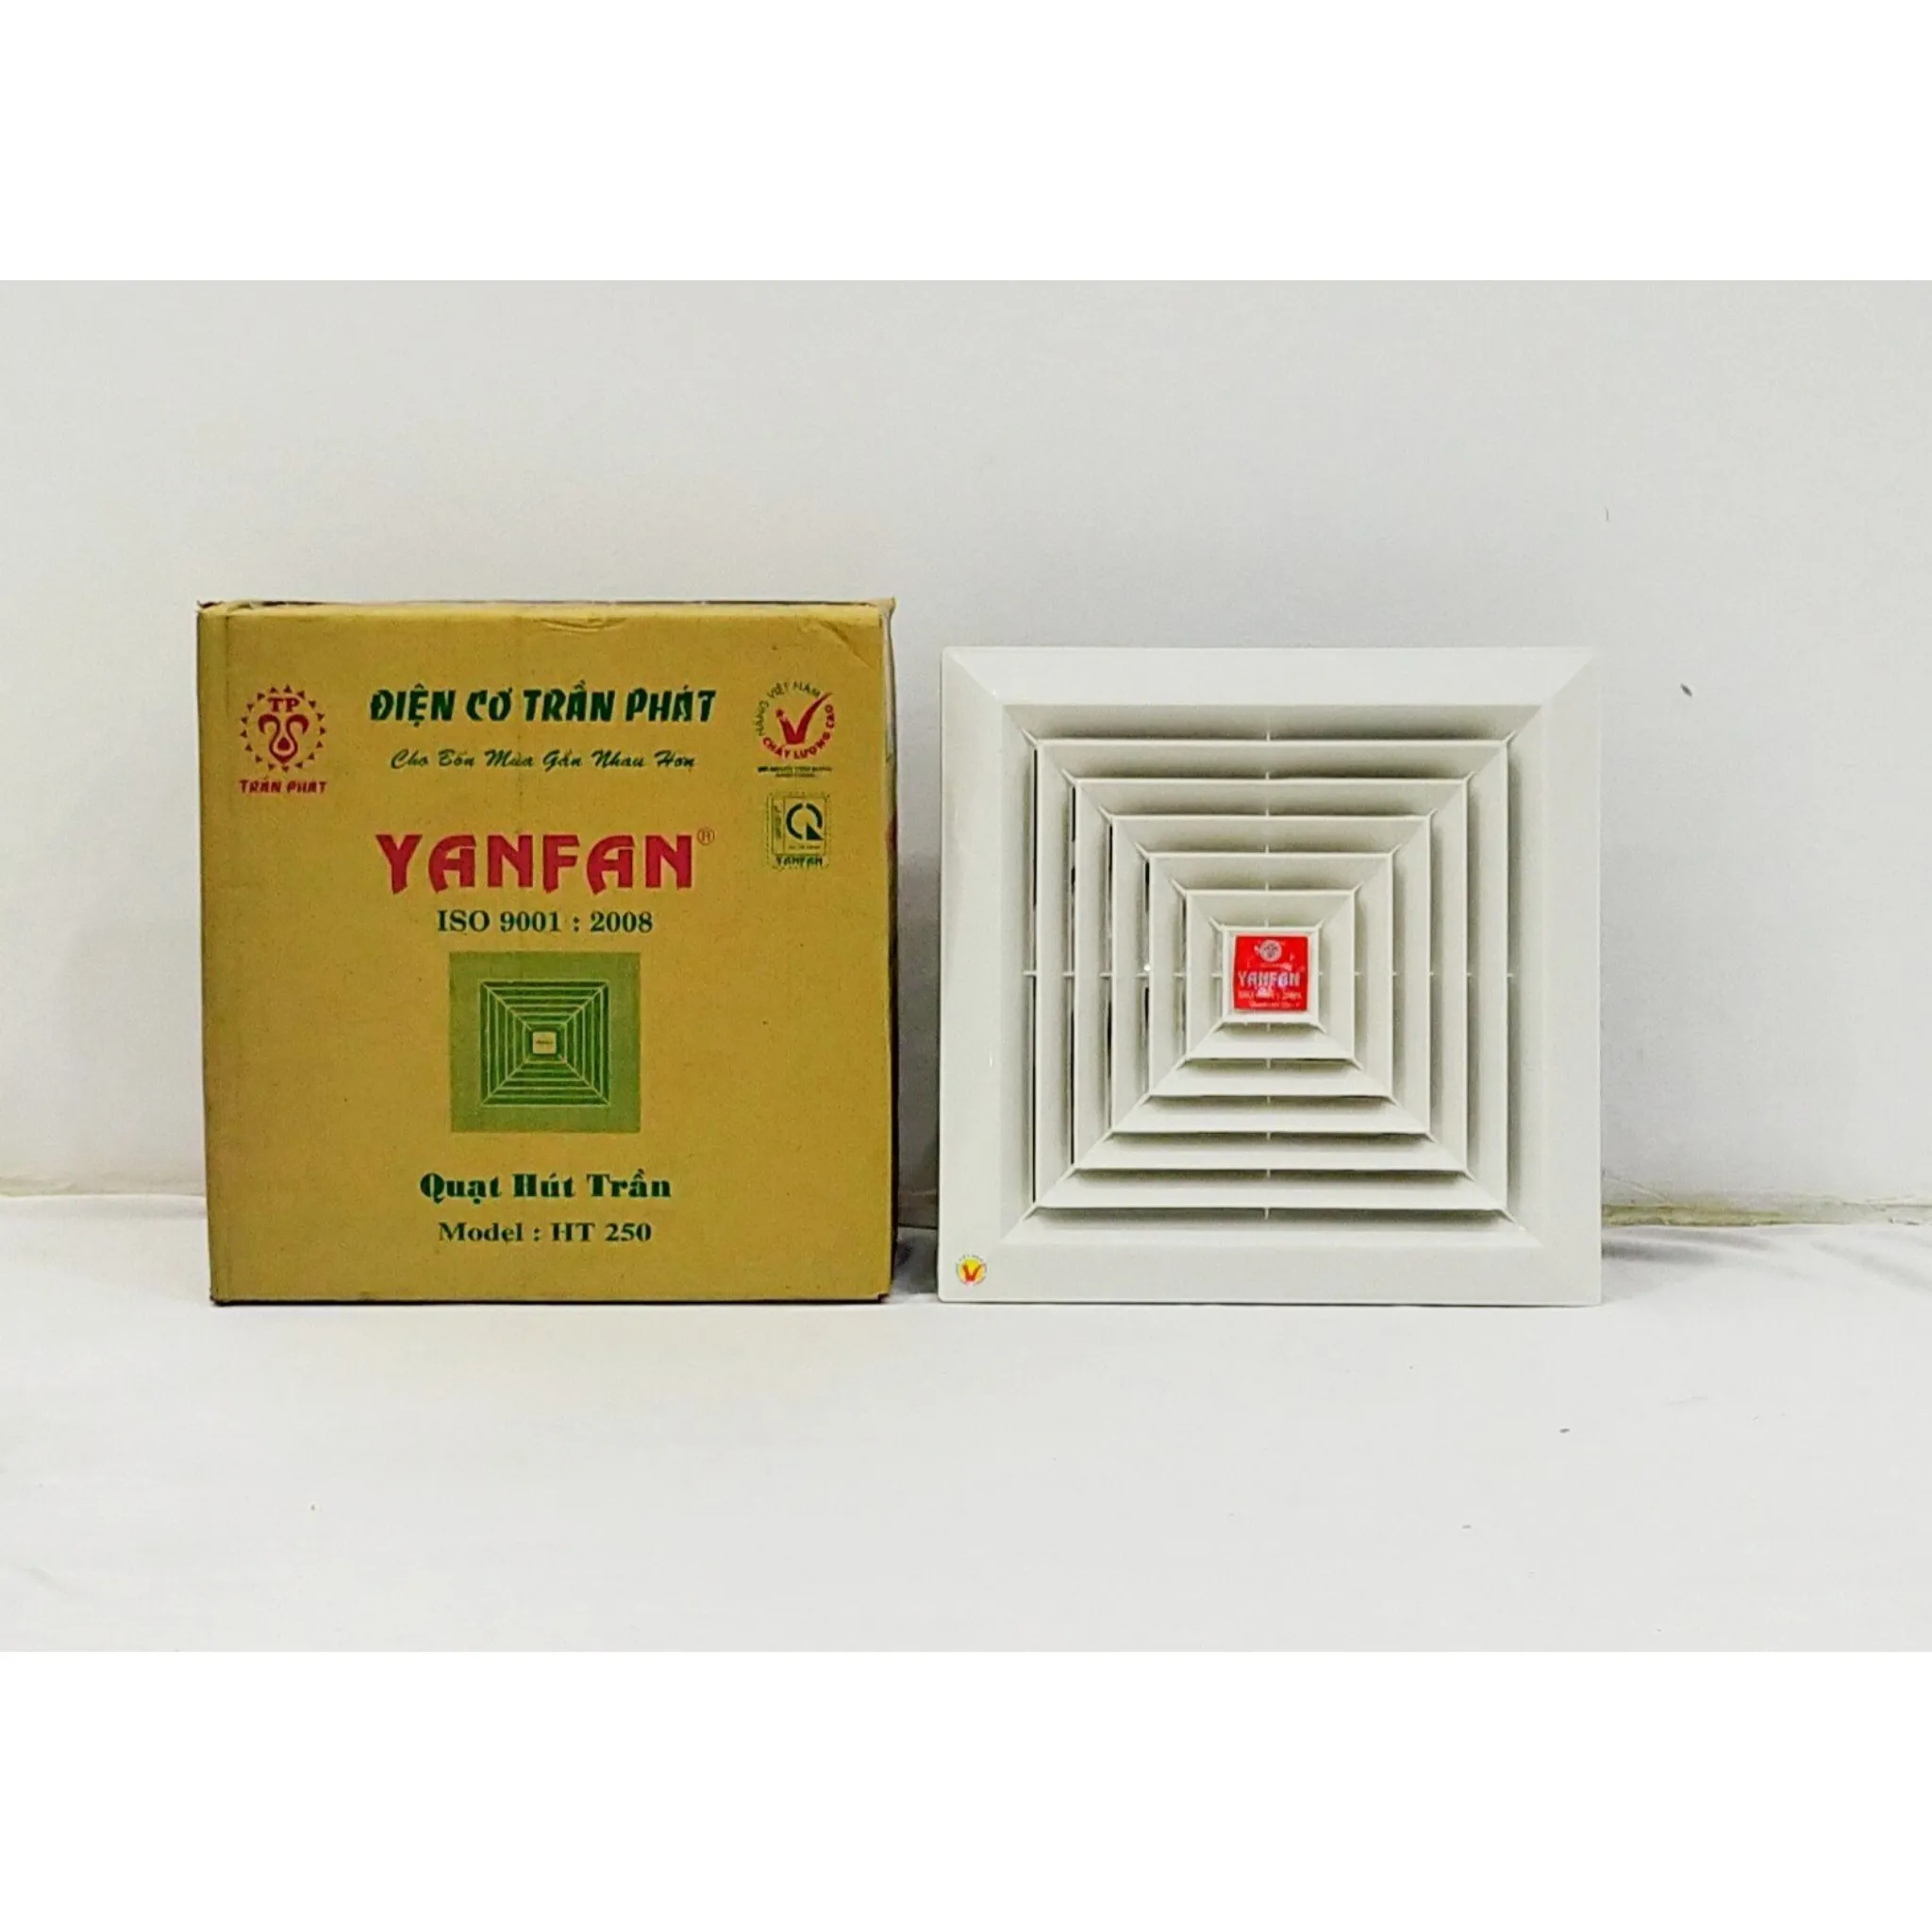 Прямые продажи с фабрики во Вьетнаме, высокое качество, 10 дюймов, потолочный вытяжной вентилятор, вентиляционный вентилятор Yanfan HT250